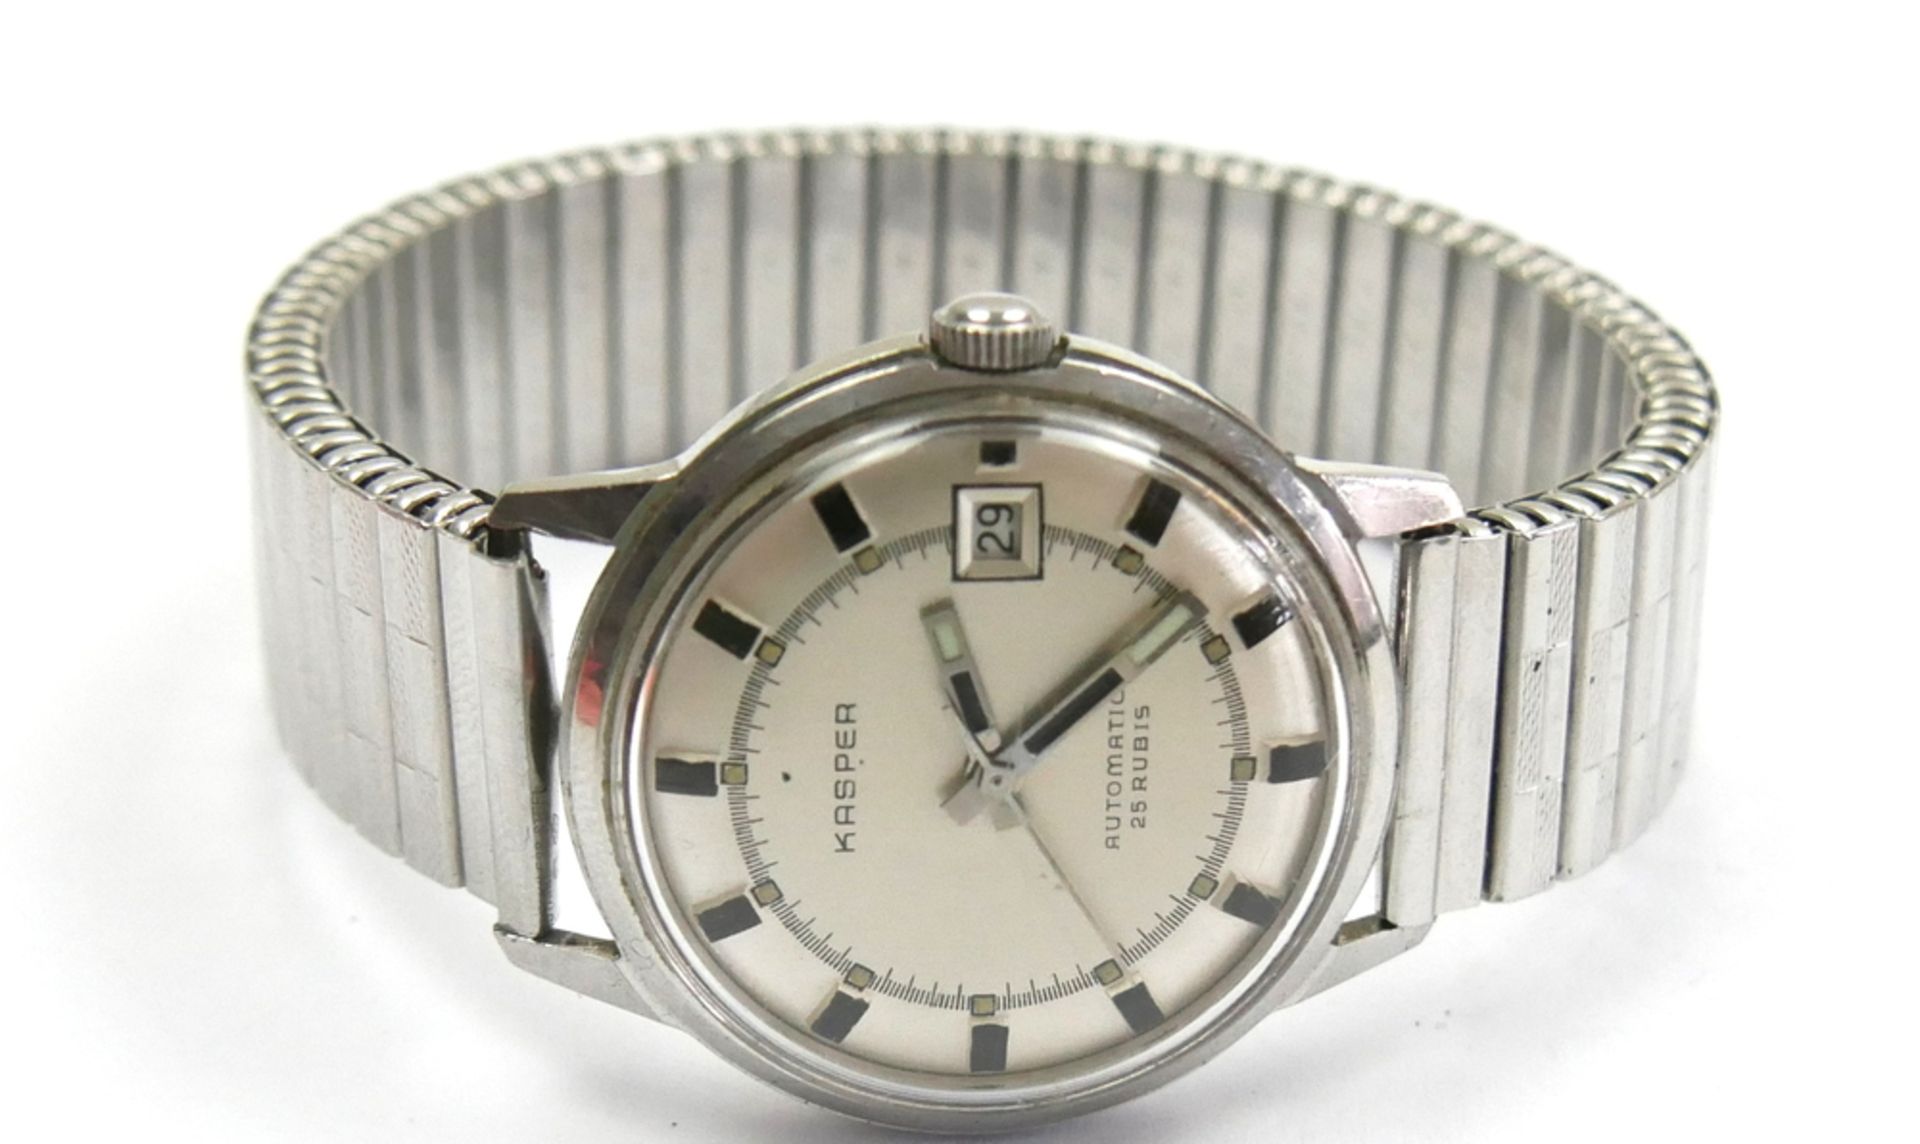 Herren Armbanduhr Vintage Kasper Automatic 25 Jewels mit Datumsanzeige. Funktion geprüft, guter